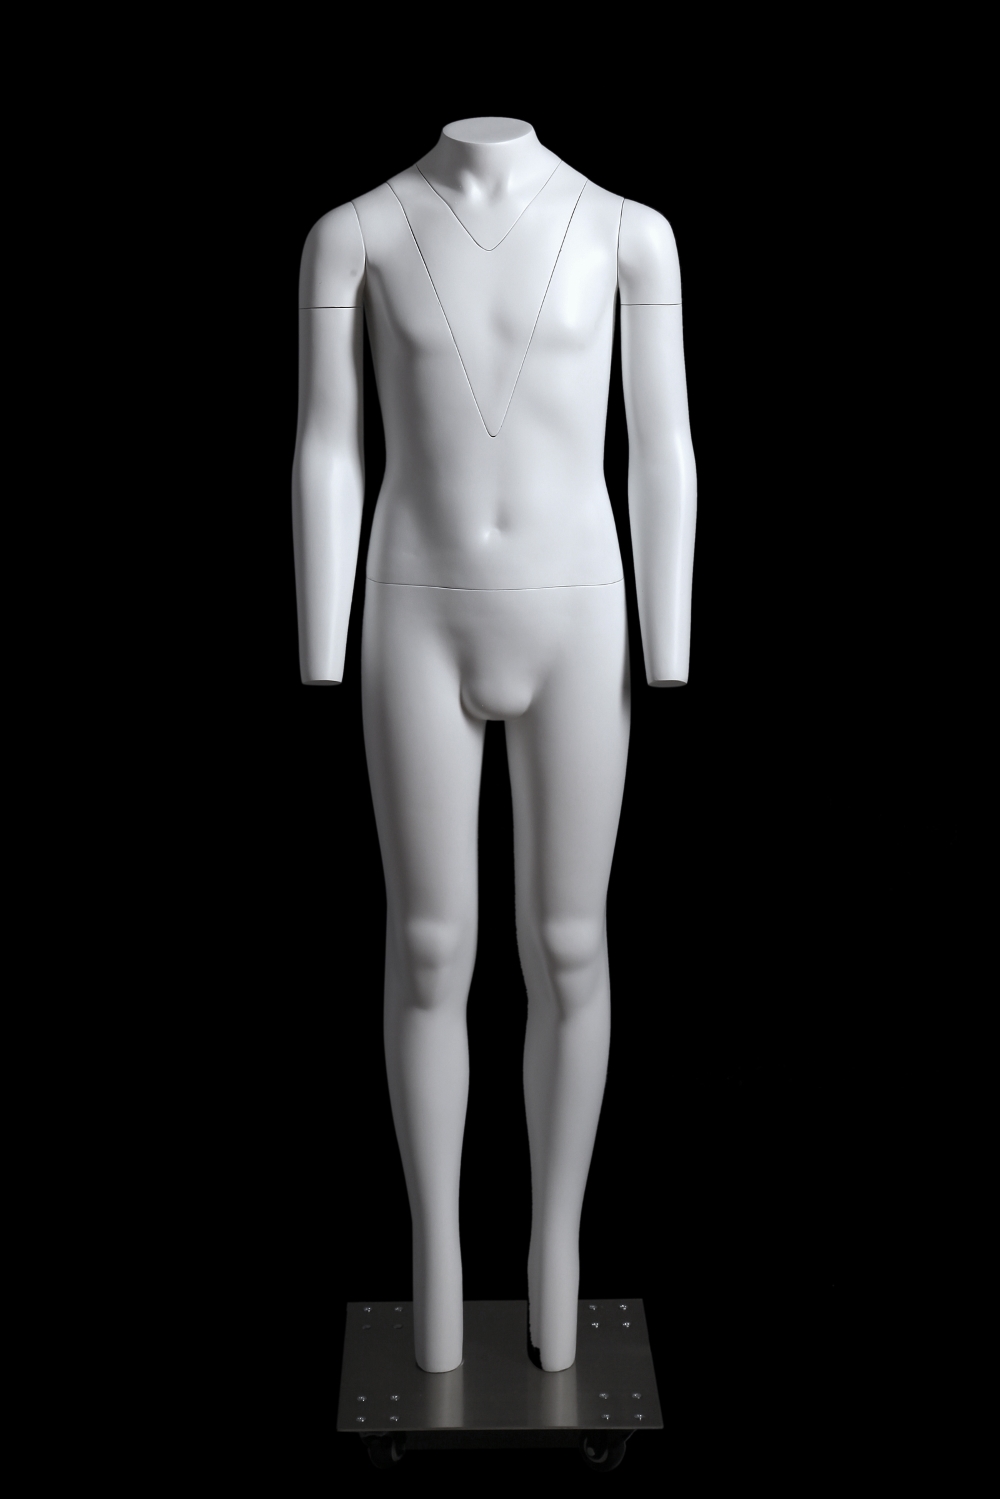 VERMIETUNG Fotofigur GHOST-Mannequin Kind 10 Jahre, Farbe weiß,  inkl. fahrbarer Metallstandplatte aus Edelstahl